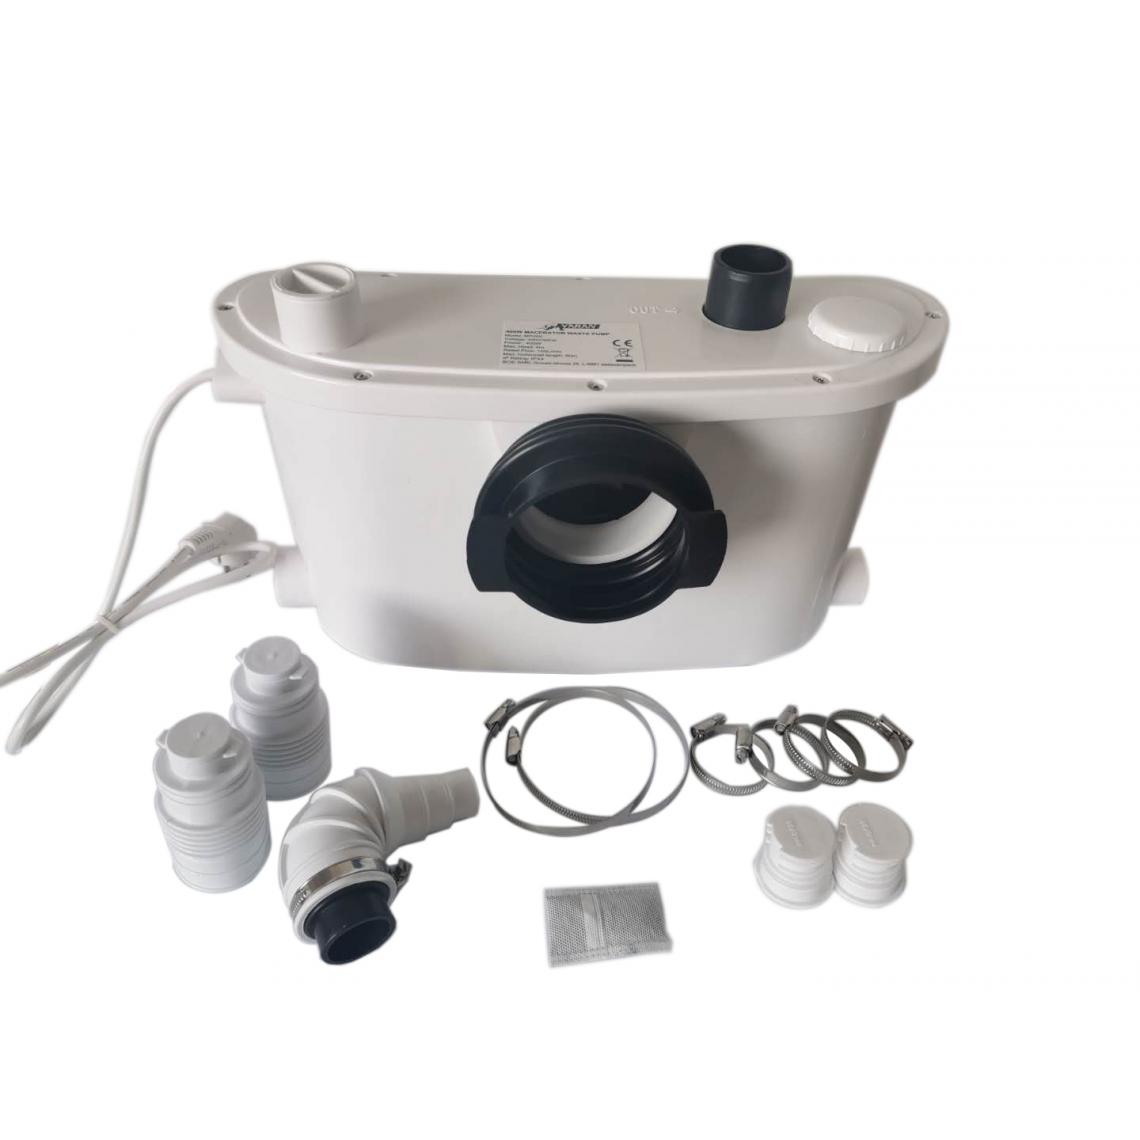 Bcelec - MP400-I Pompe de relevage eaux usées 400W, Broyeur Sanitaire pour douche, wc, évier, baignoire, machine à laver et lave-vaisselle - Broyeur WC